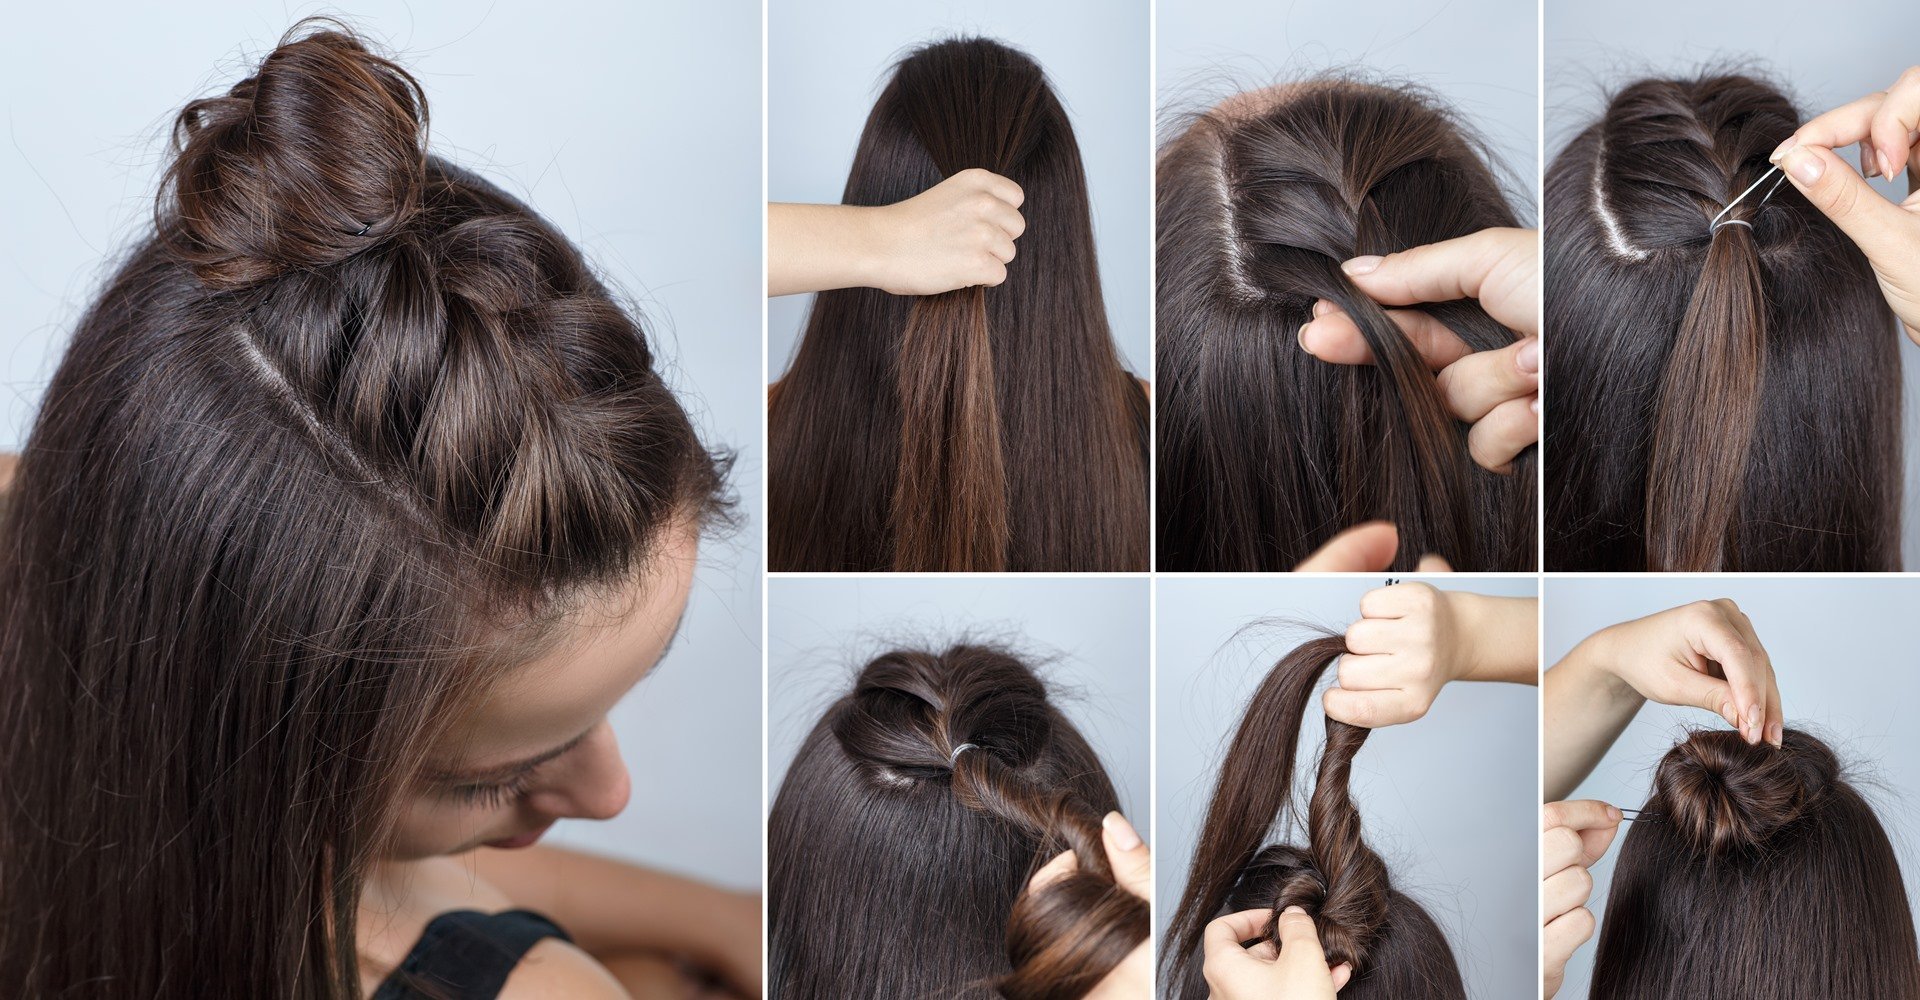 Trança unicórnio em cabelos médios: siga o passo a passo e aprenda a fazer  o penteado moderninho! - L'Oréal Paris